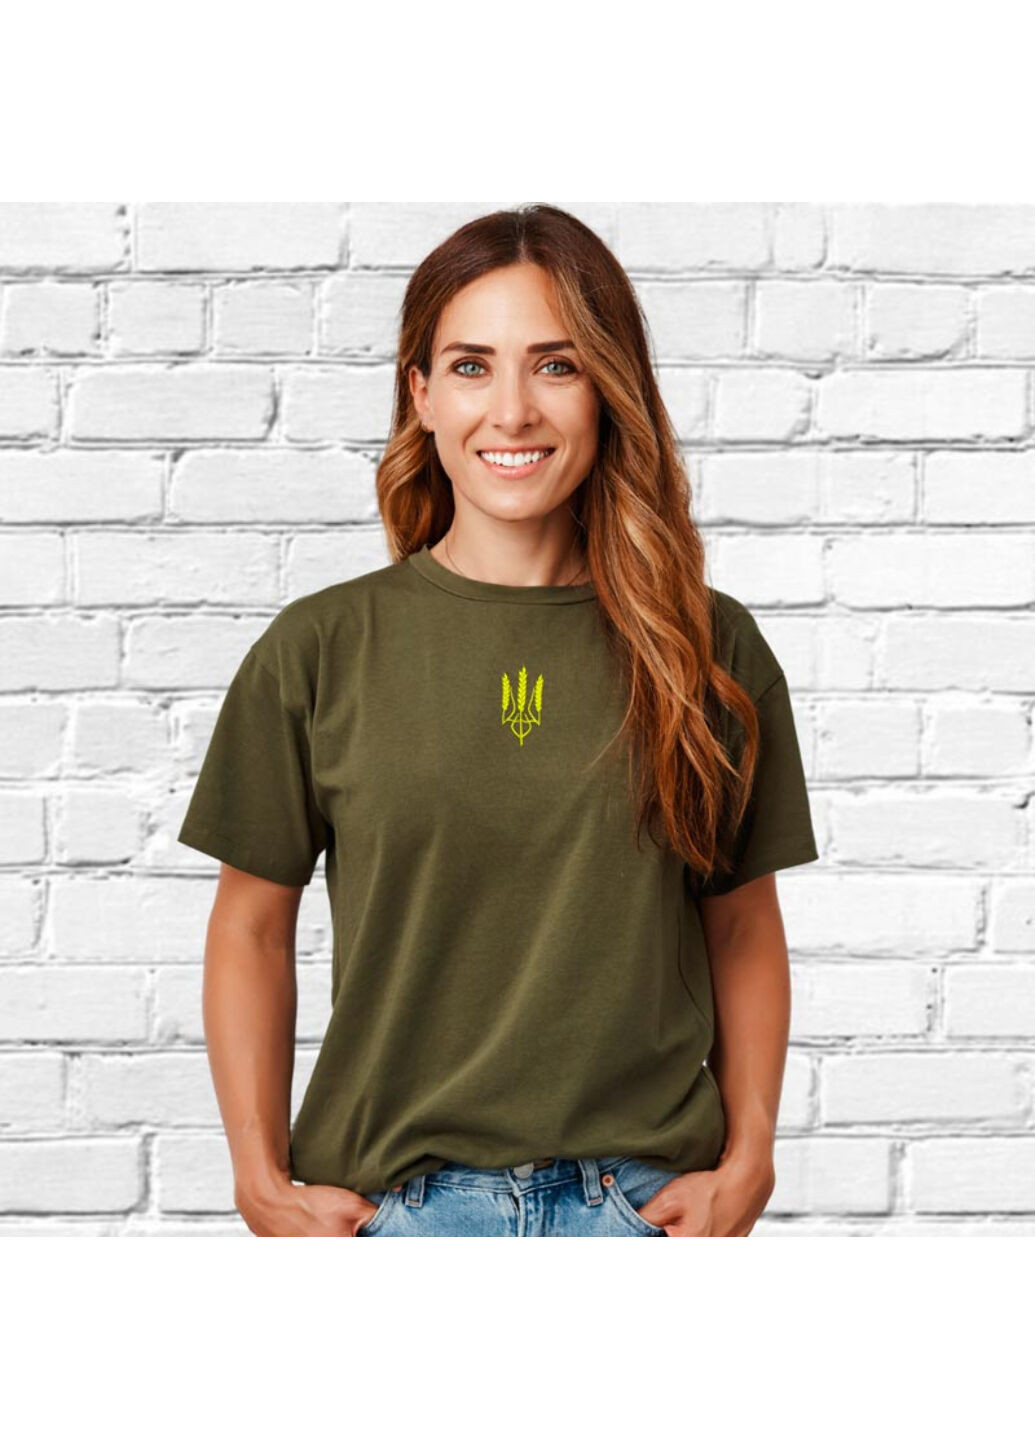 Хаки (оливковая) футболка з вишивкою тризуба (колос) 02 женская хаки l No Brand